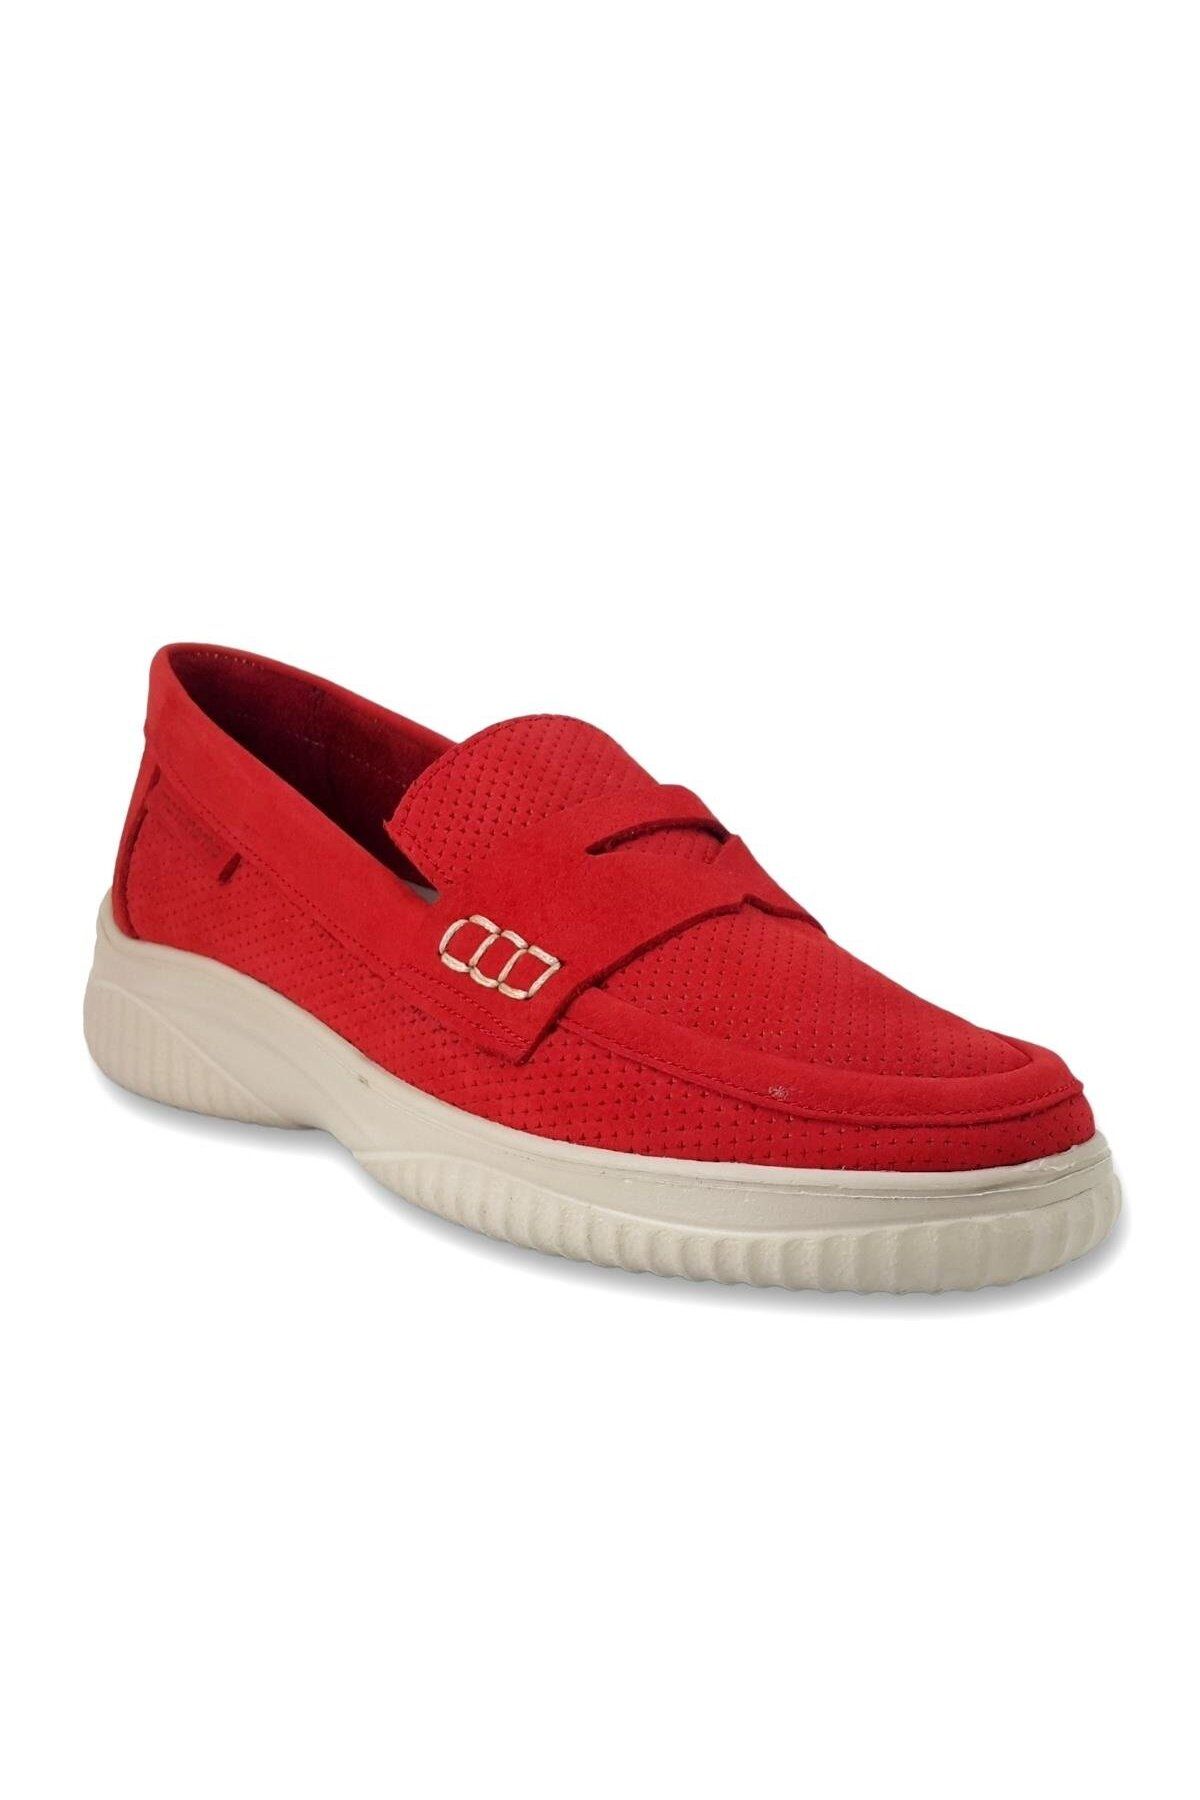 Mammamia 3870 Kadın Günlük Ayakkabı - Kırmızı